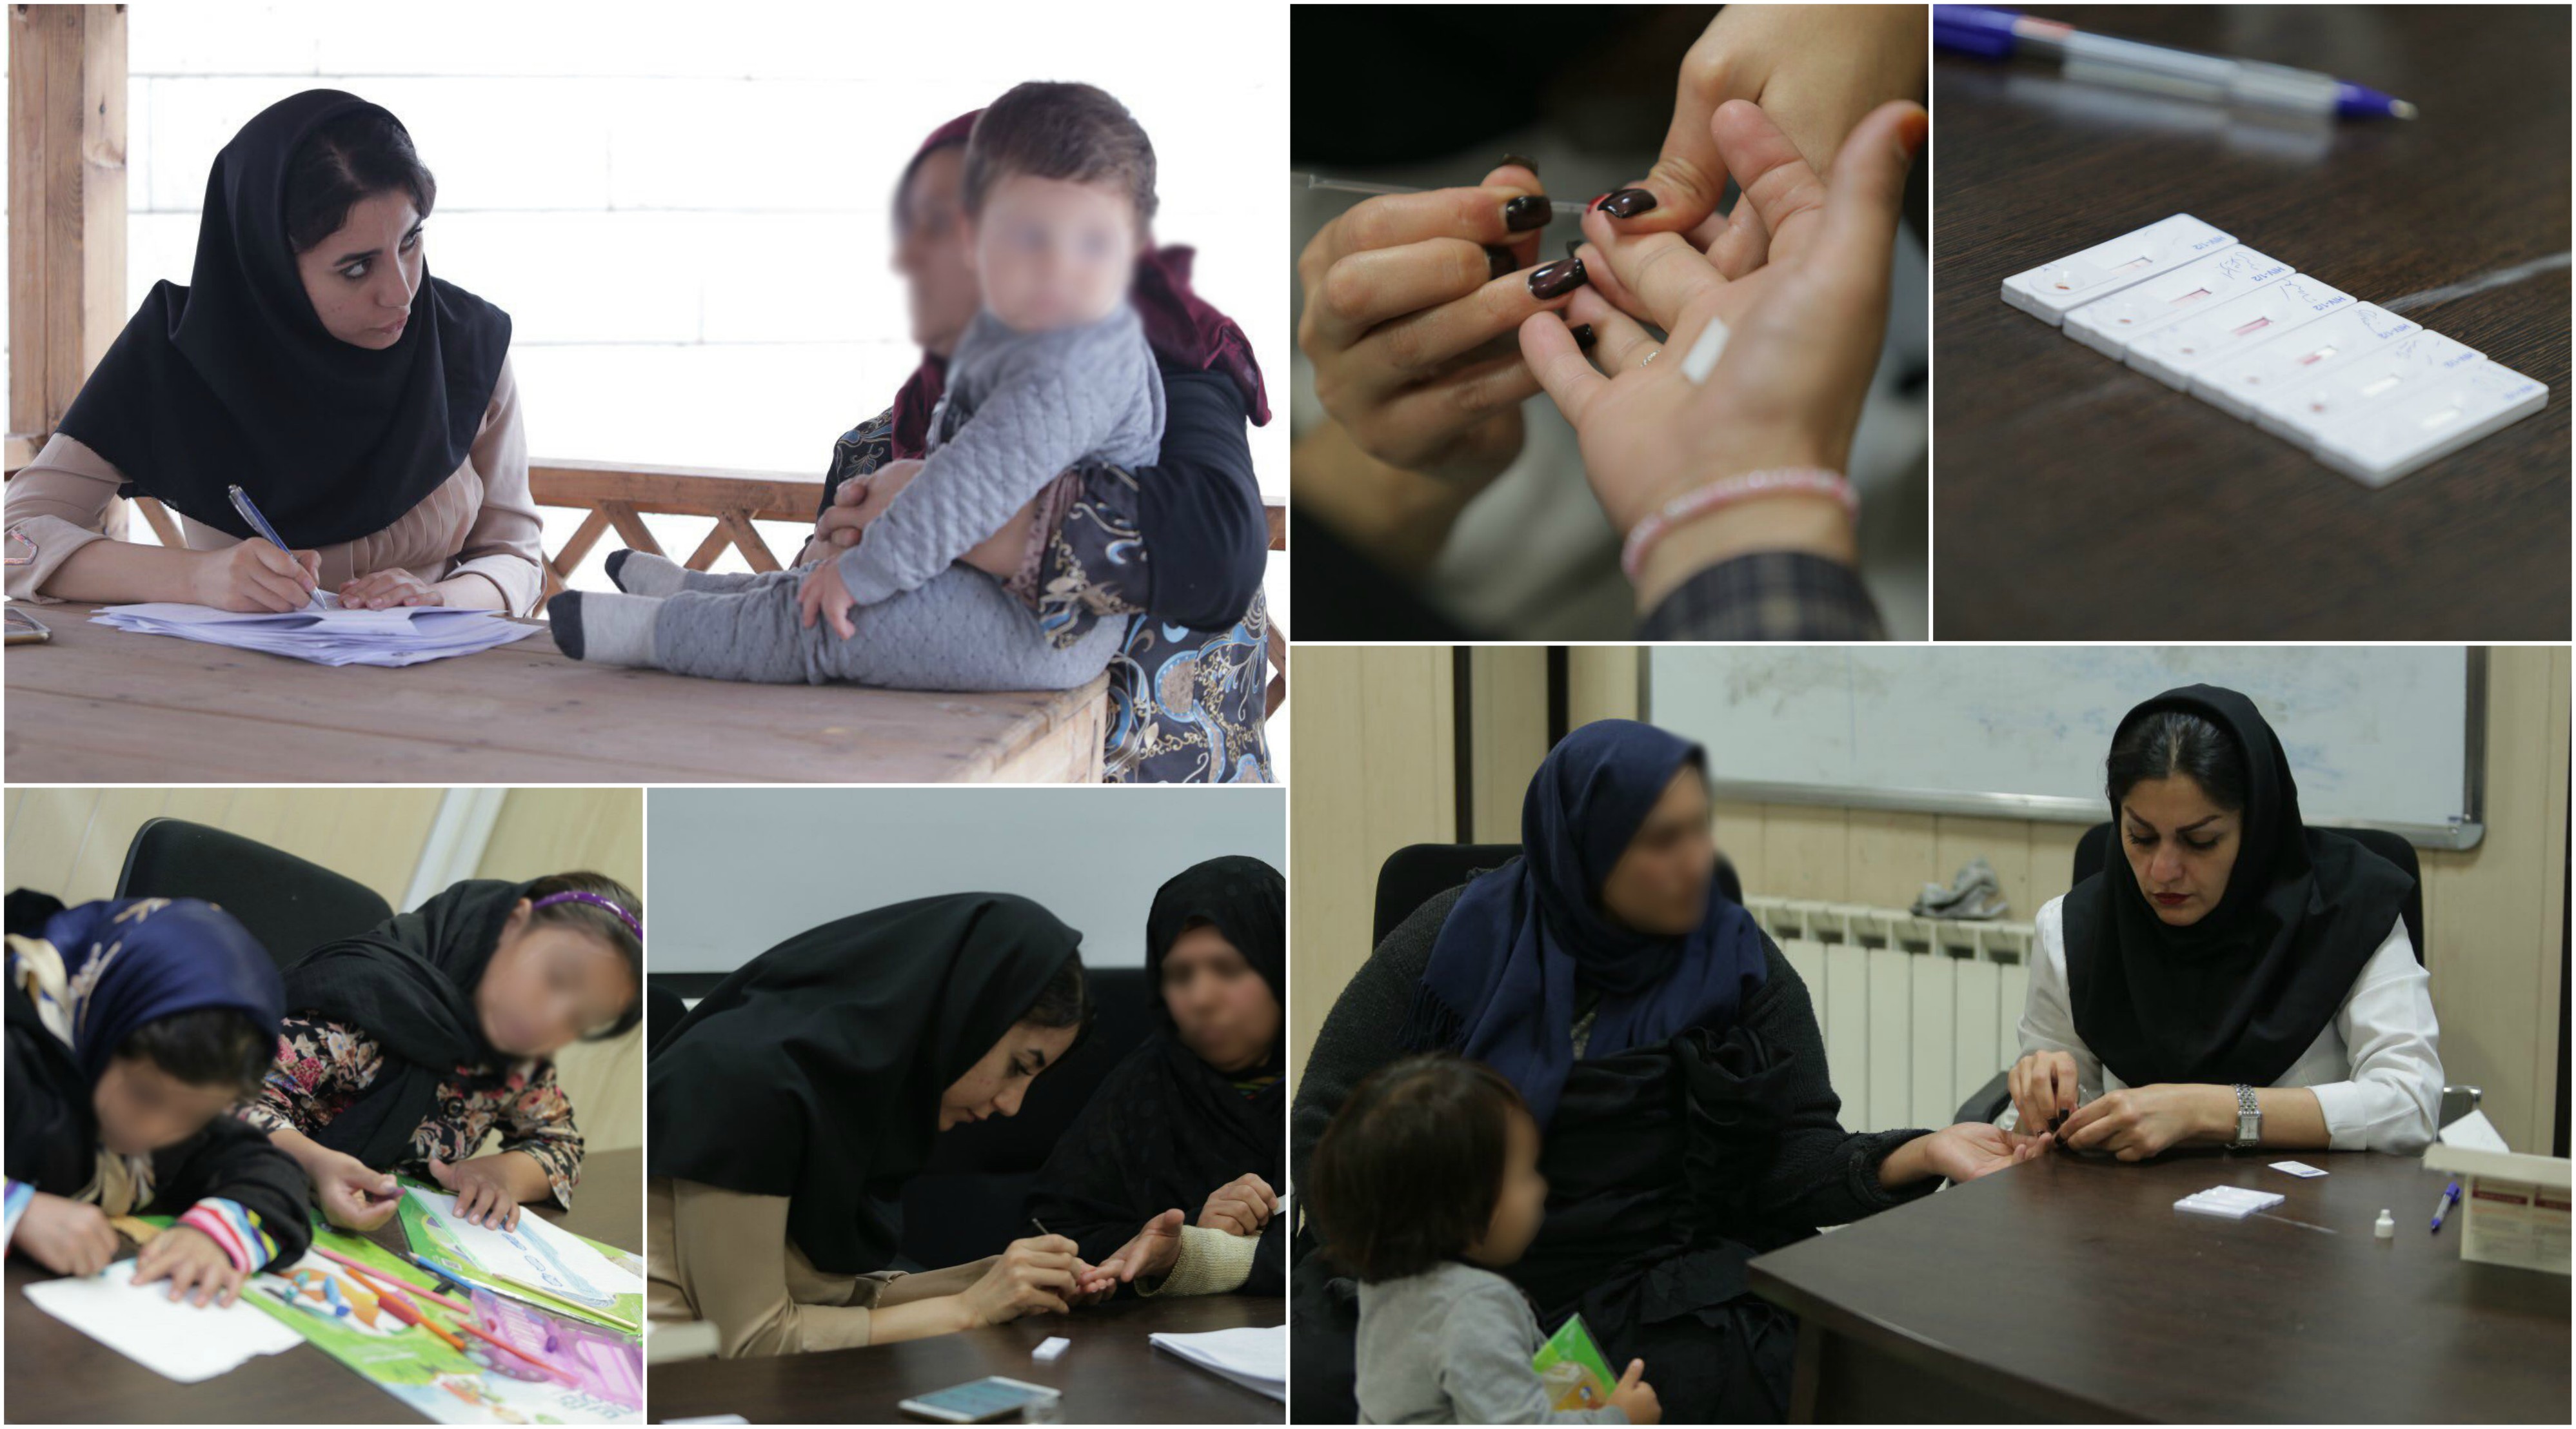 کانون جوانان مهرآفرین(حامی کودکان کار و خیابان)از تعدادی از مددجویان خود آزمایش اچ آی وی گرفت.